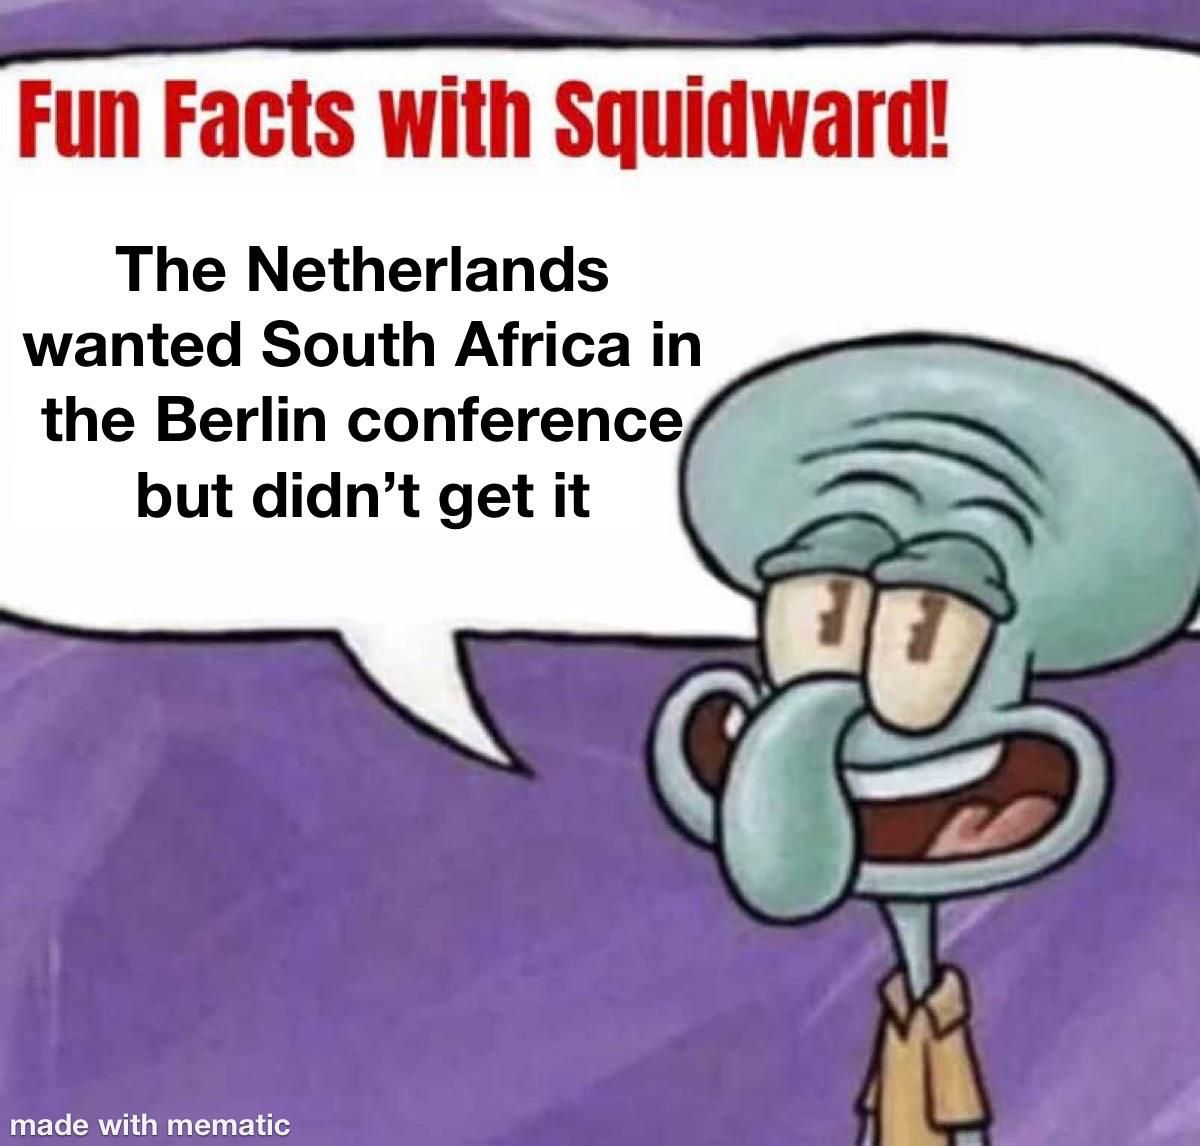 Poor Netherlands